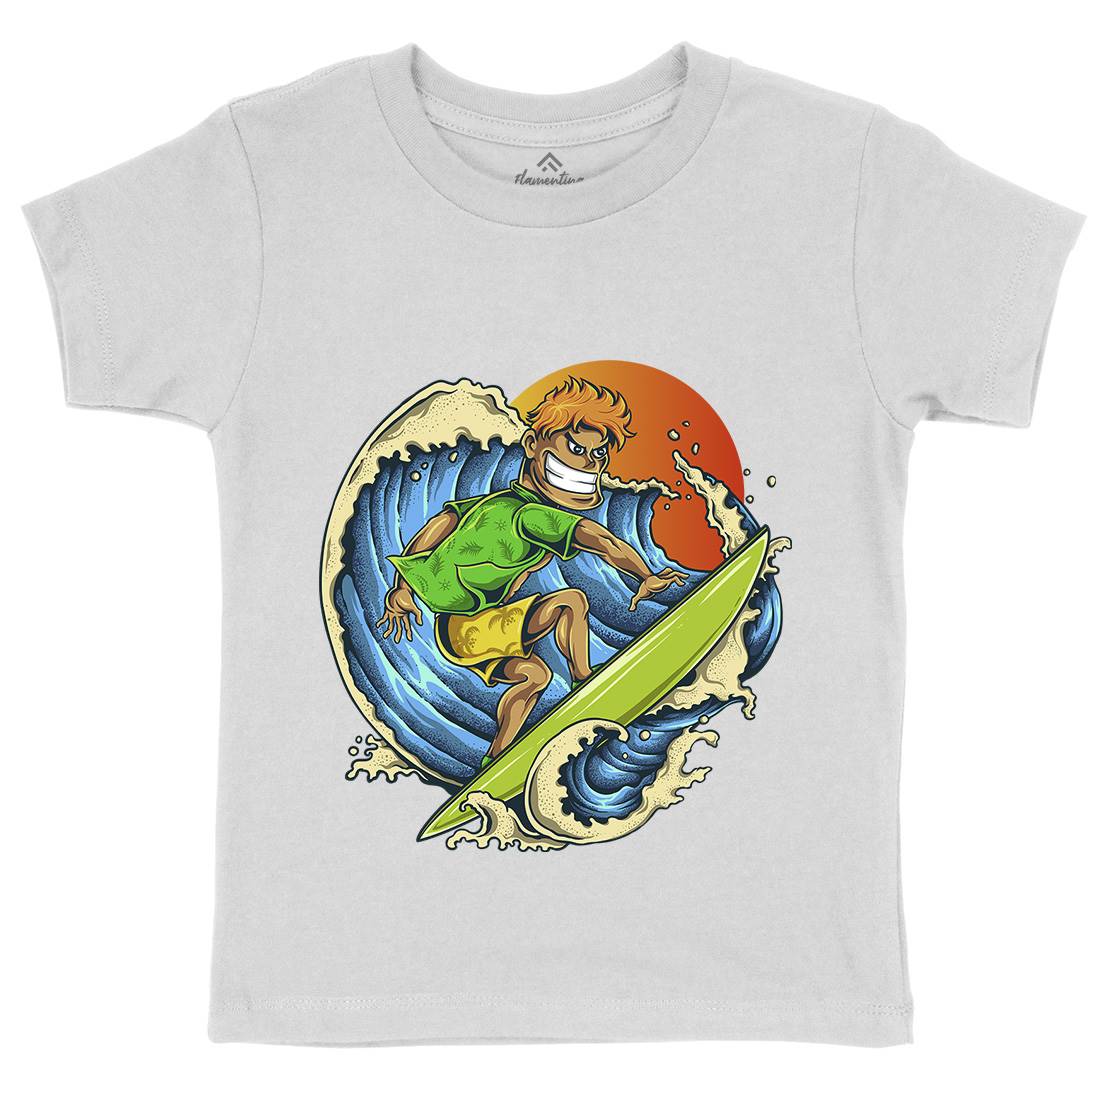 Pro Surfer Kids Crew Neck T-Shirt Surf A454